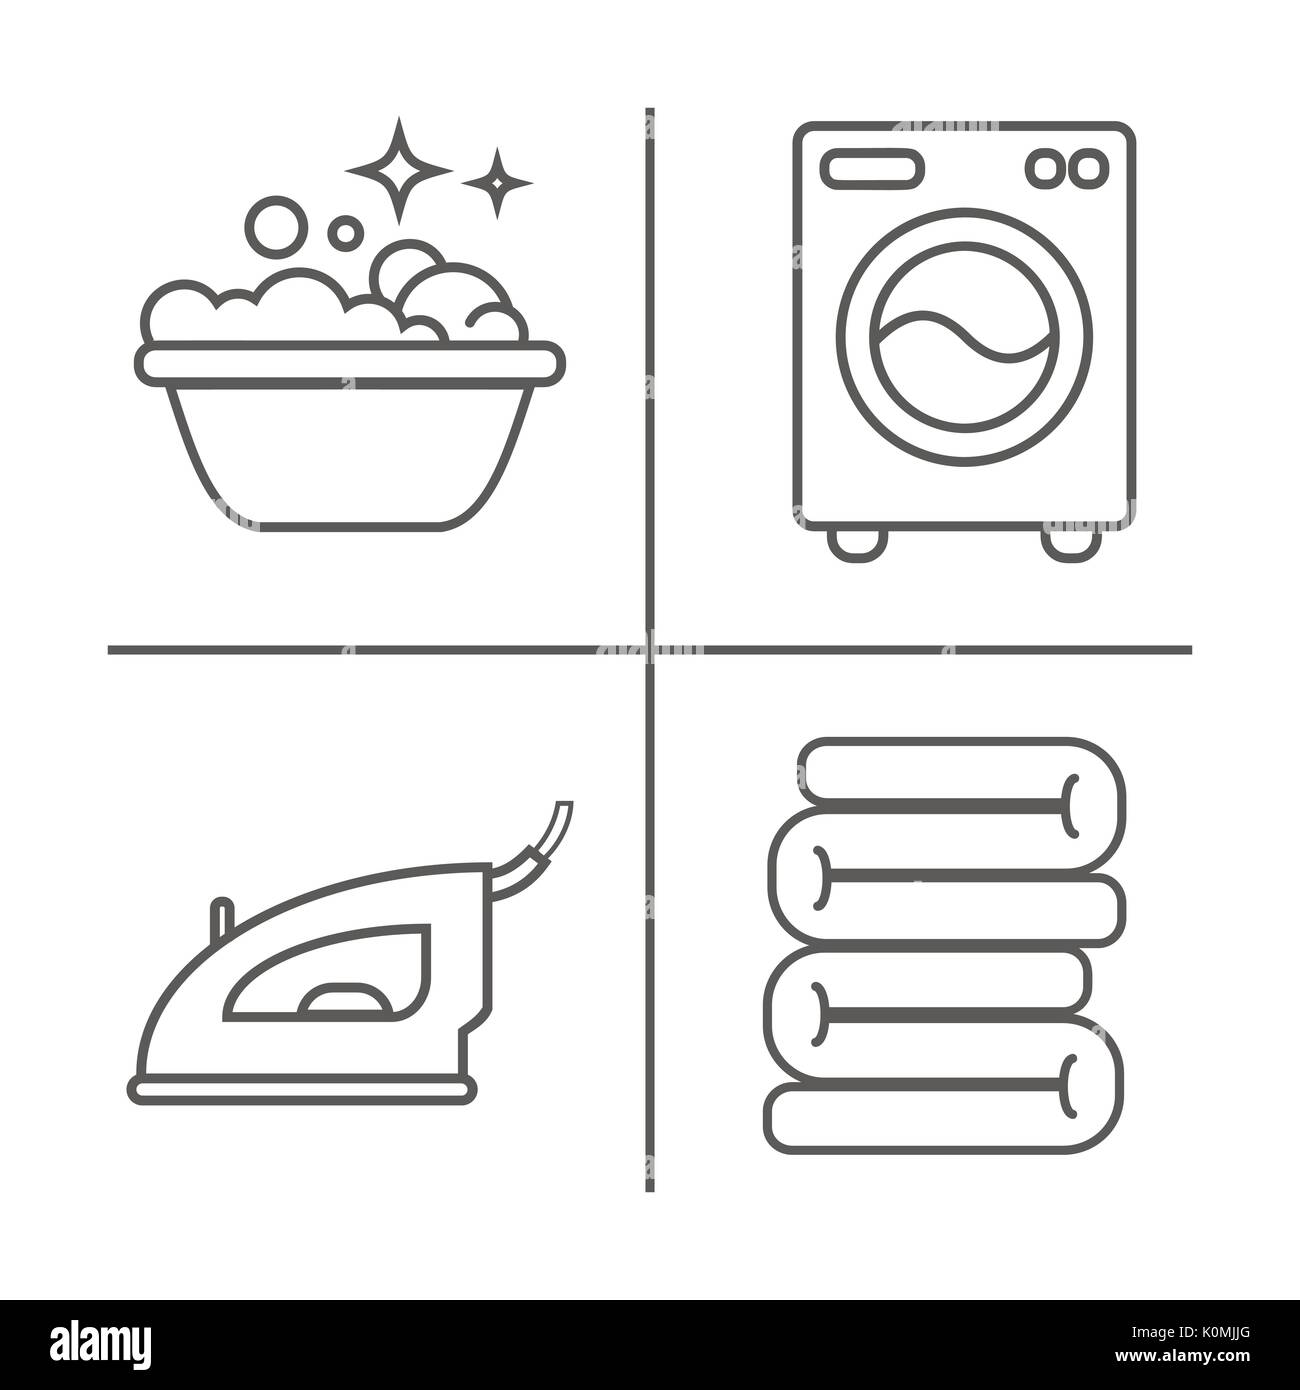 Waschen, Bügeln, saubere Wäsche Zeile für Symbole. Waschmaschine, Bügeleisen, Handwäsche und andere clining Symbol. Um im Haus lineare Anzeichen für Reinigung Stock Vektor